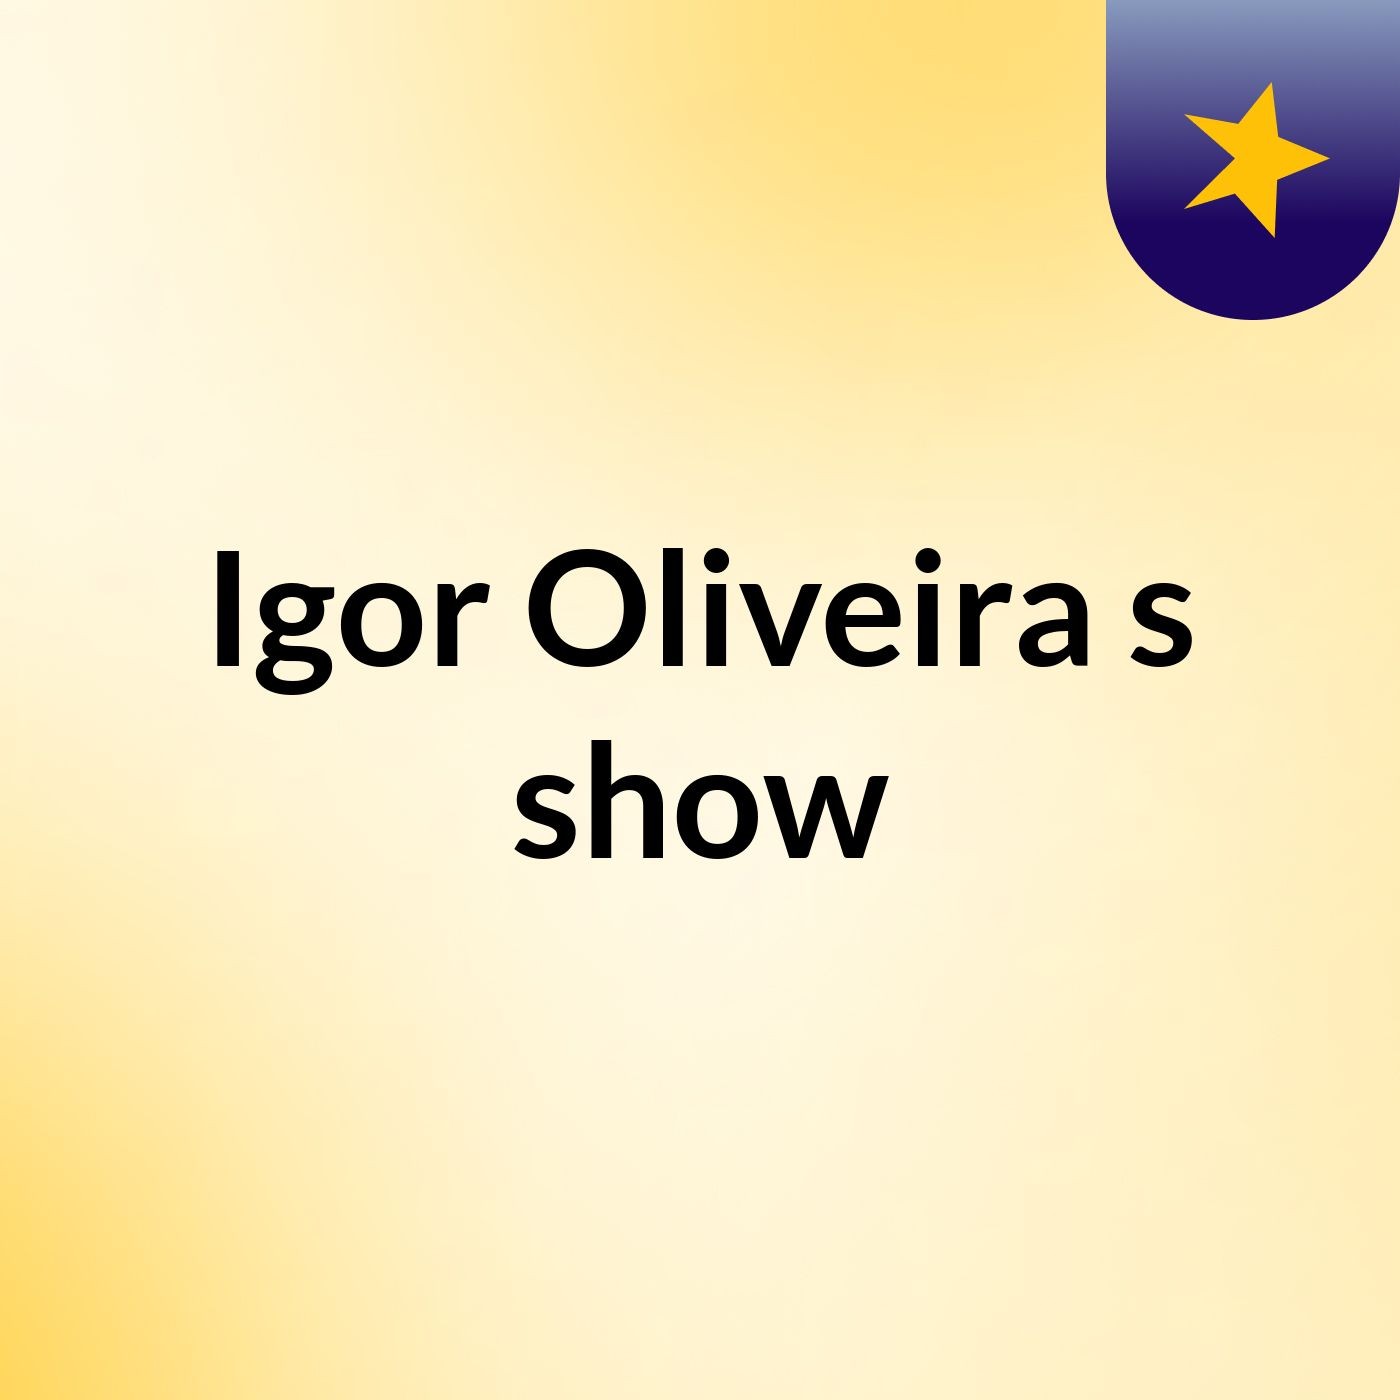 Igor Oliveira's show